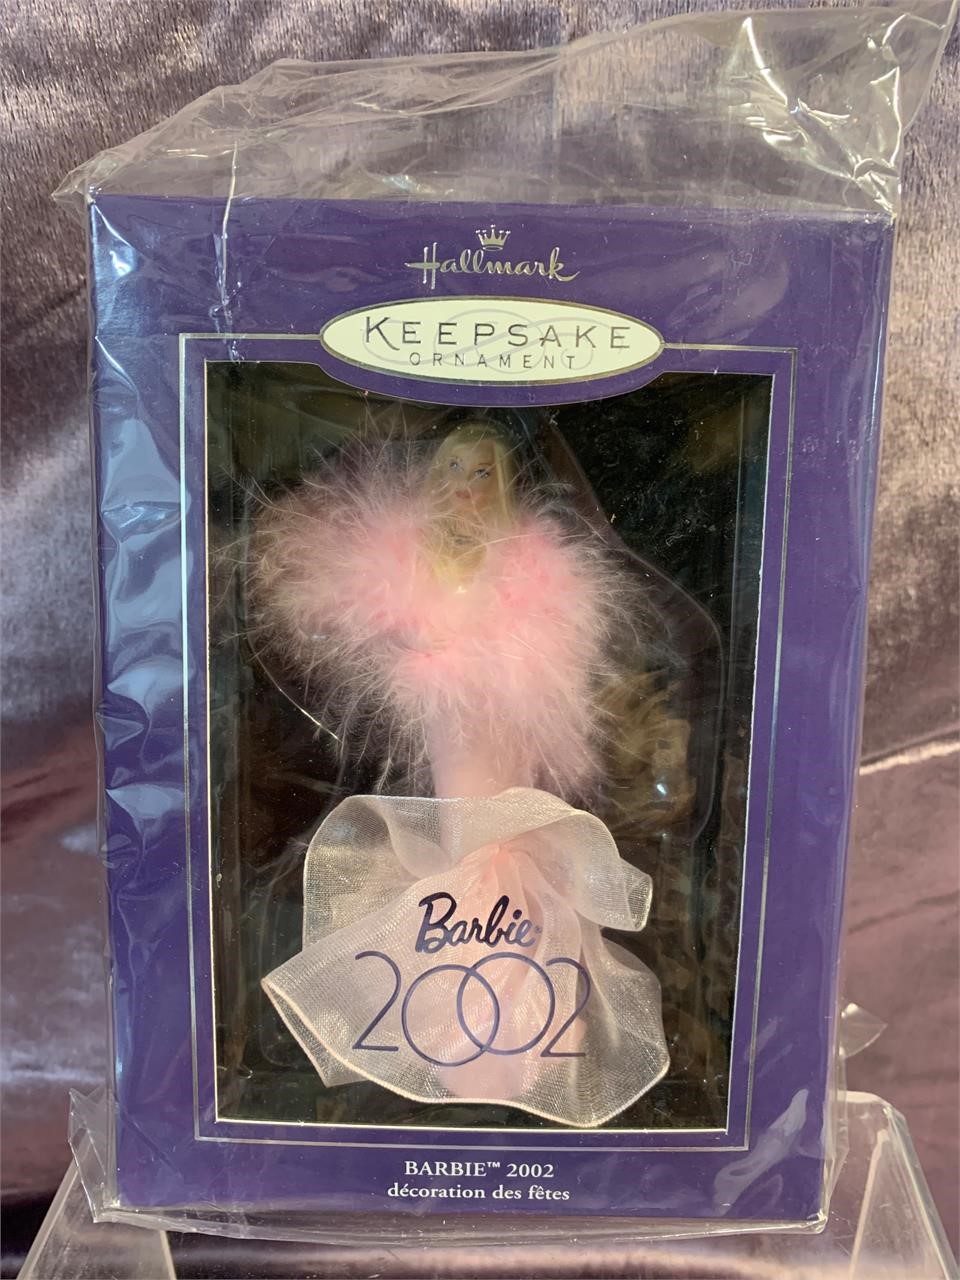 NIB Hallmark Barbie 2002 Keepsake Ornament